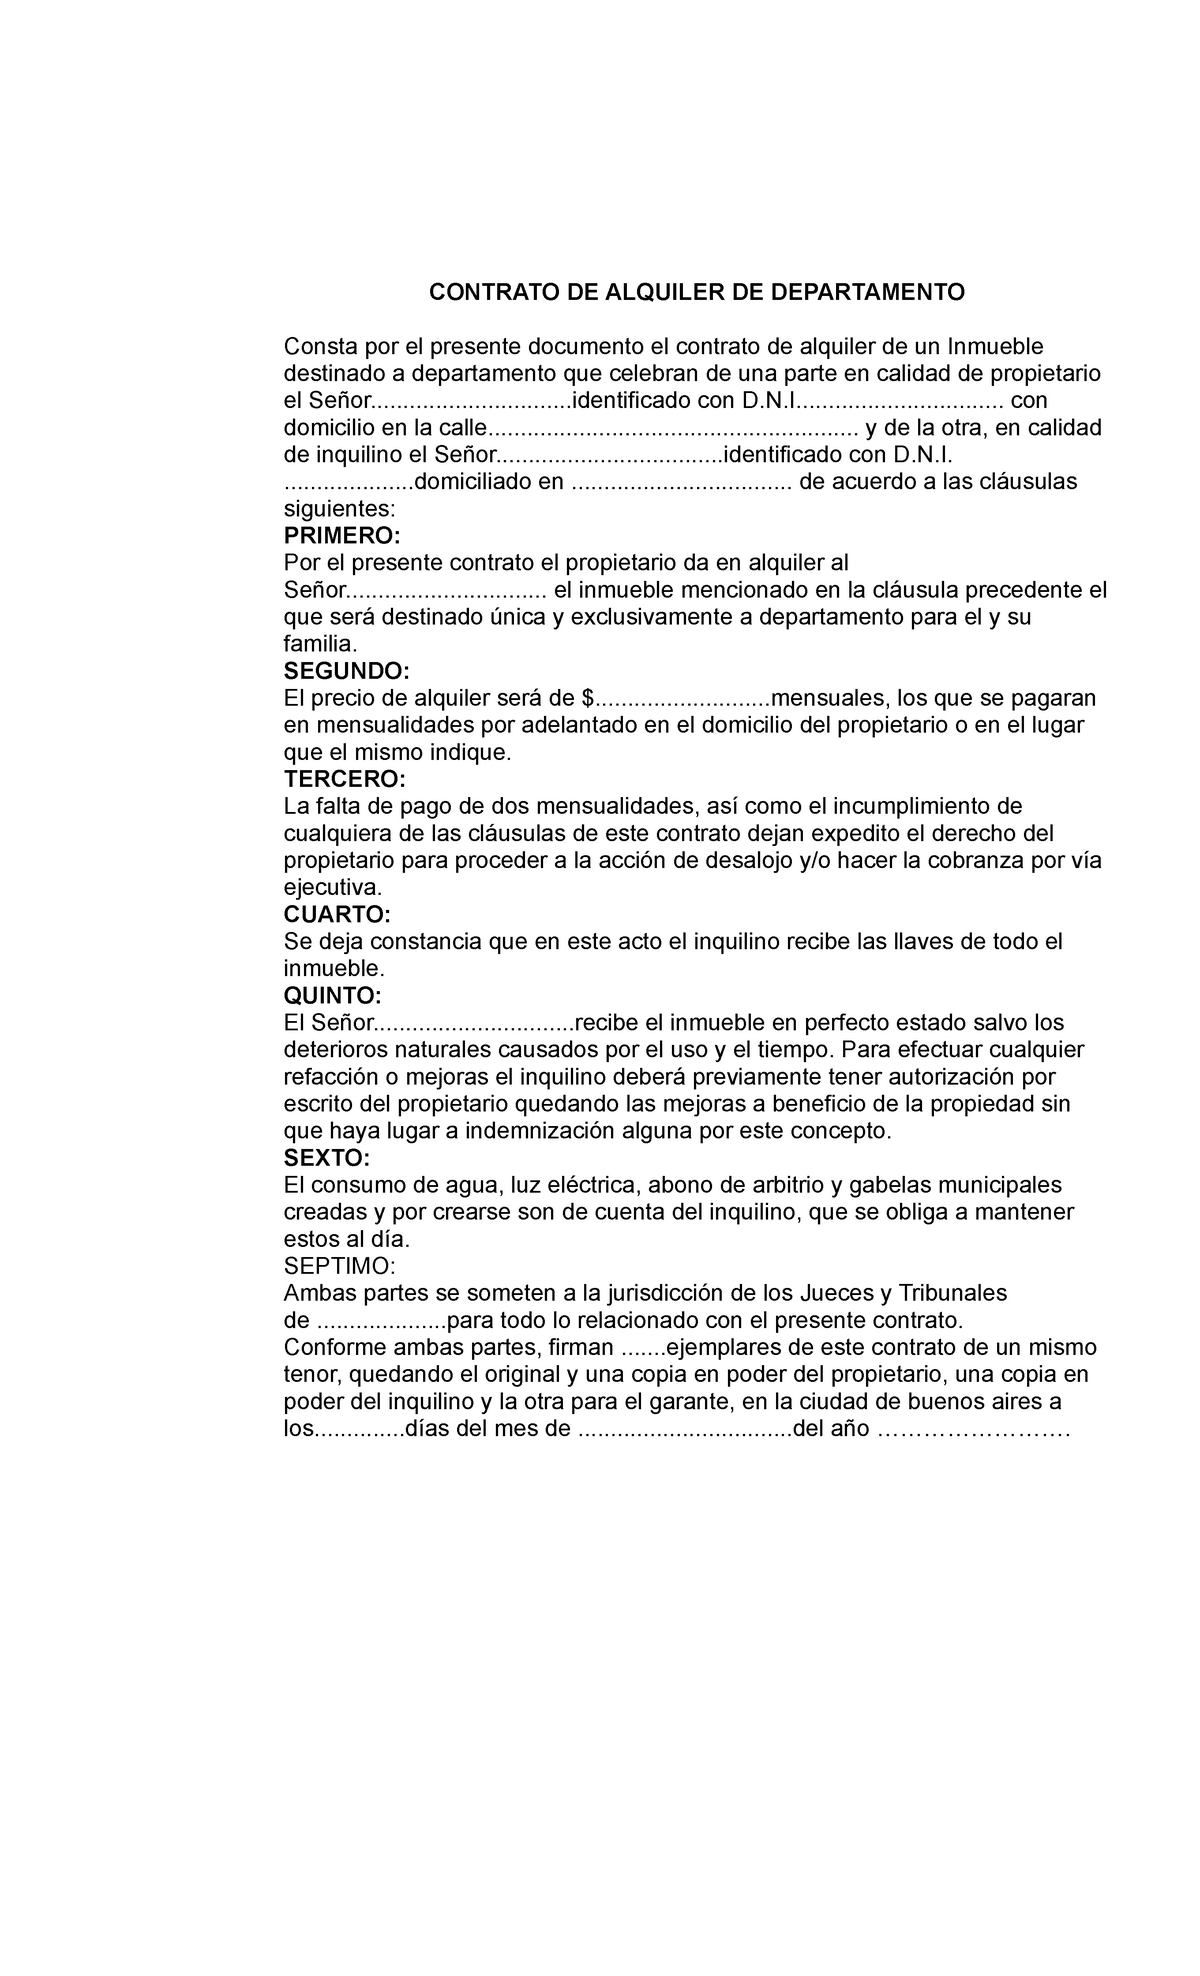 Modelo de contrato de alquiler - CONTRATO DE ALQUILER DE DEPARTAMENTO  Consta por el presente - Studocu